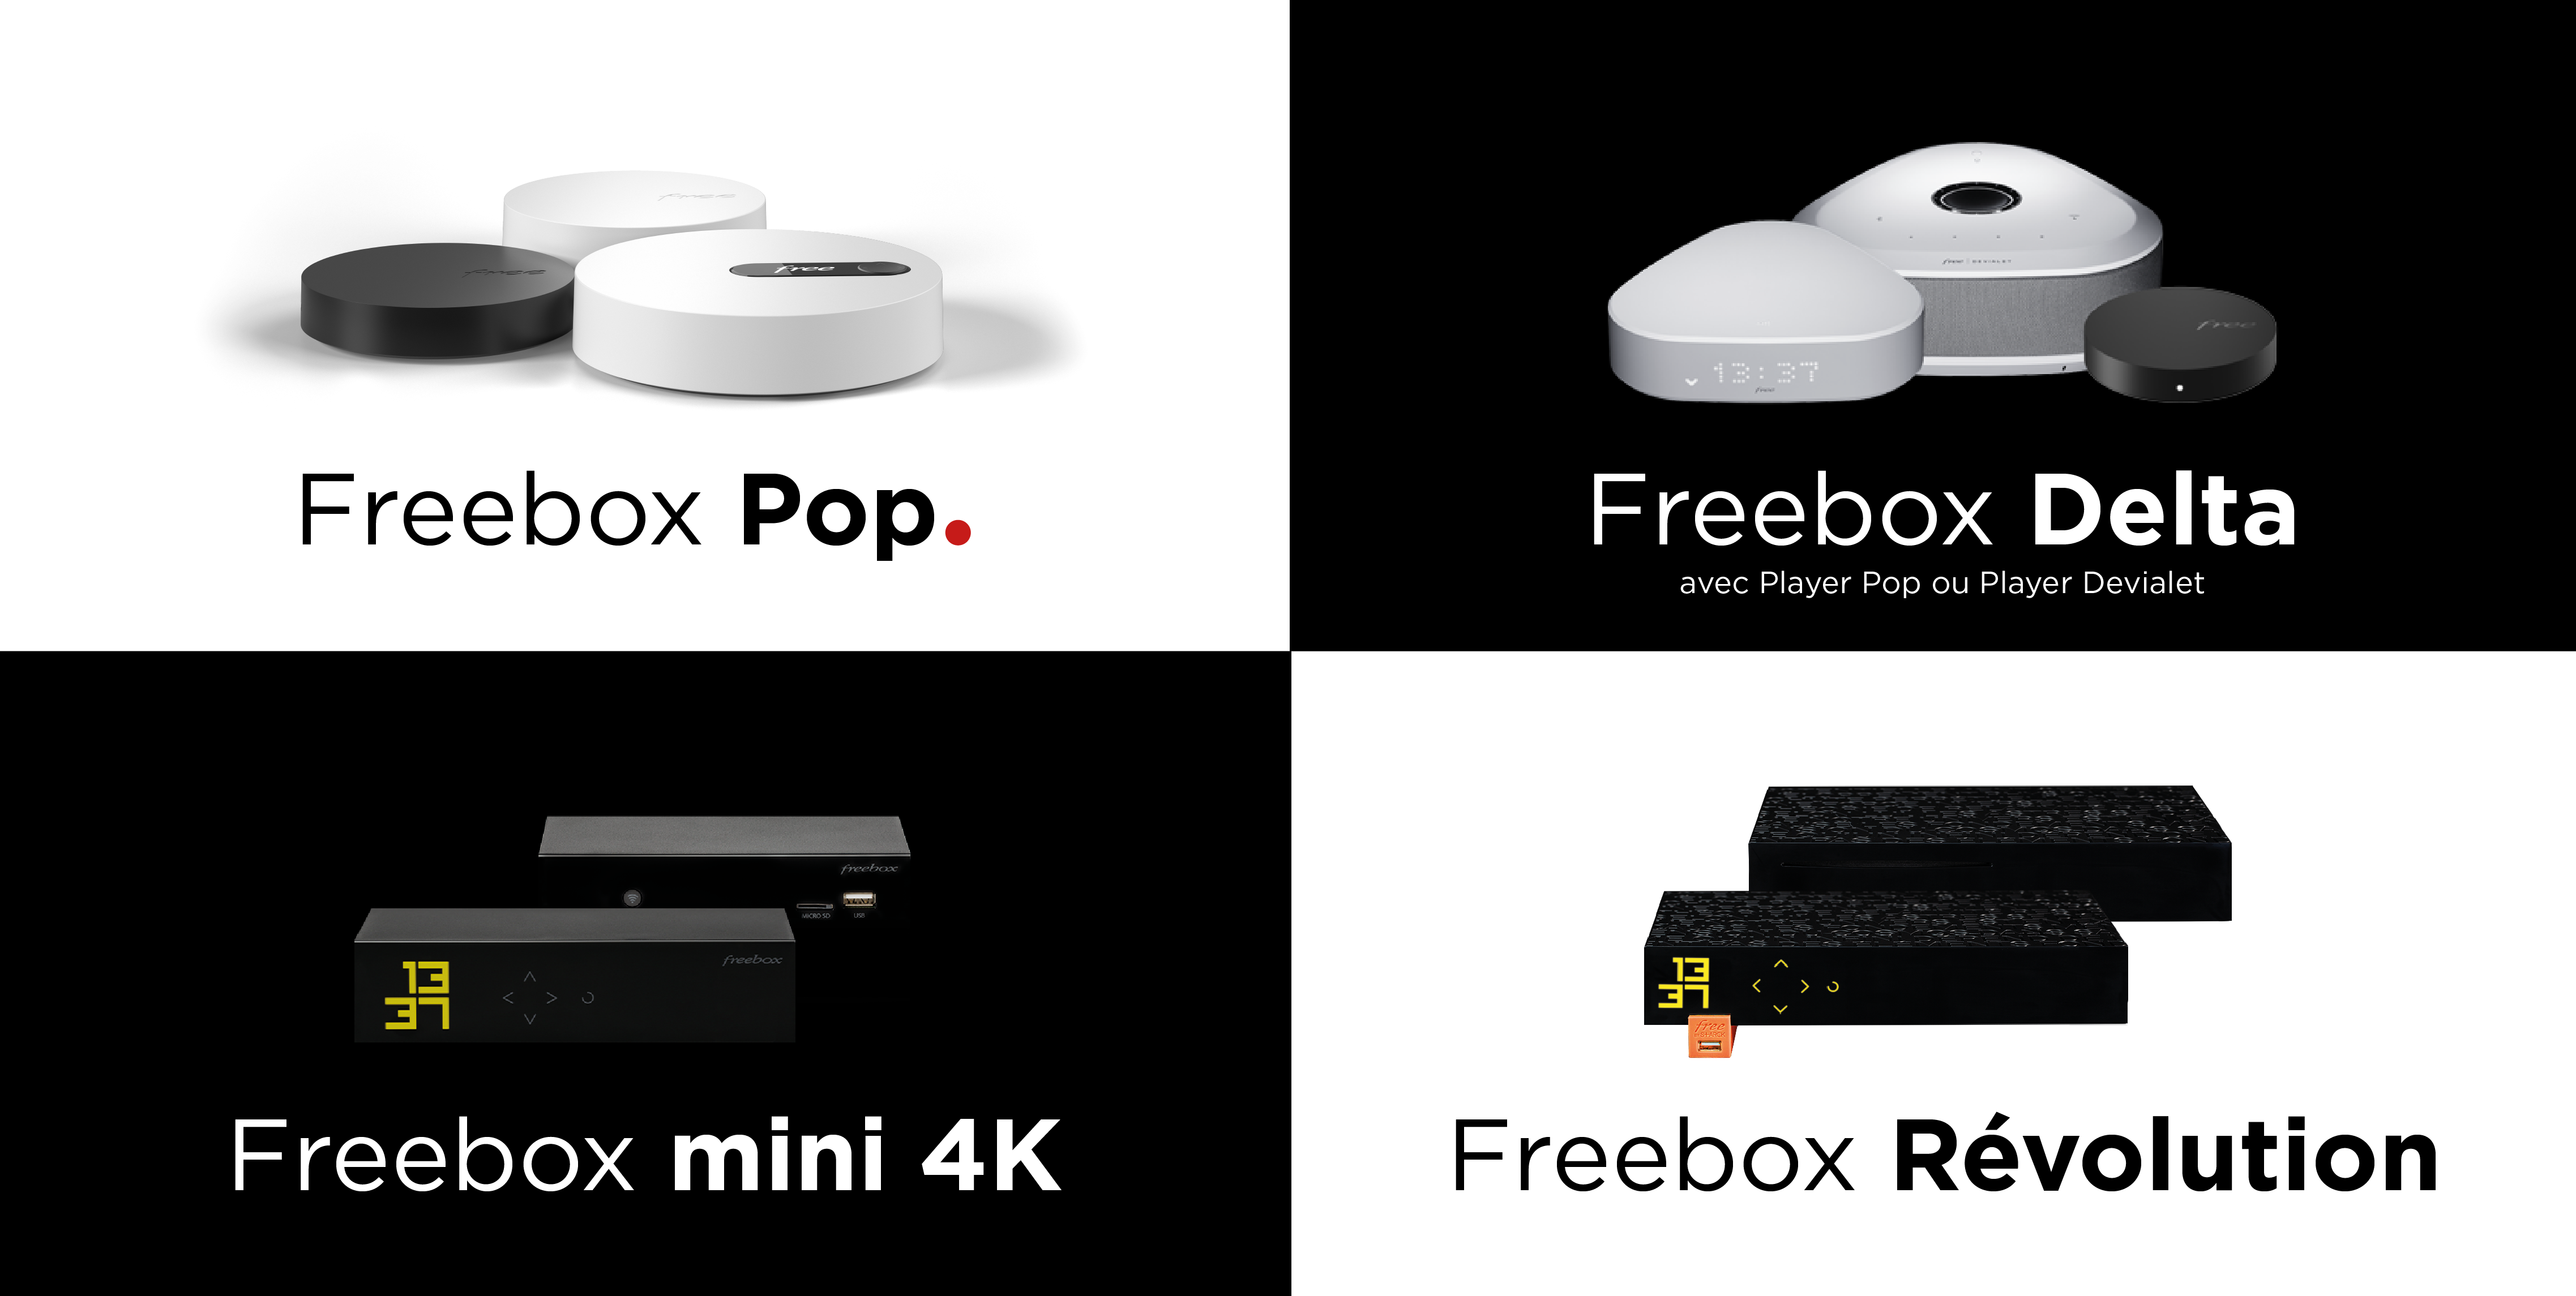 Free lève le voile sur la Freebox Pop, simplifie ses offres Freebox et enrichit les offres de ses abonnés actuels